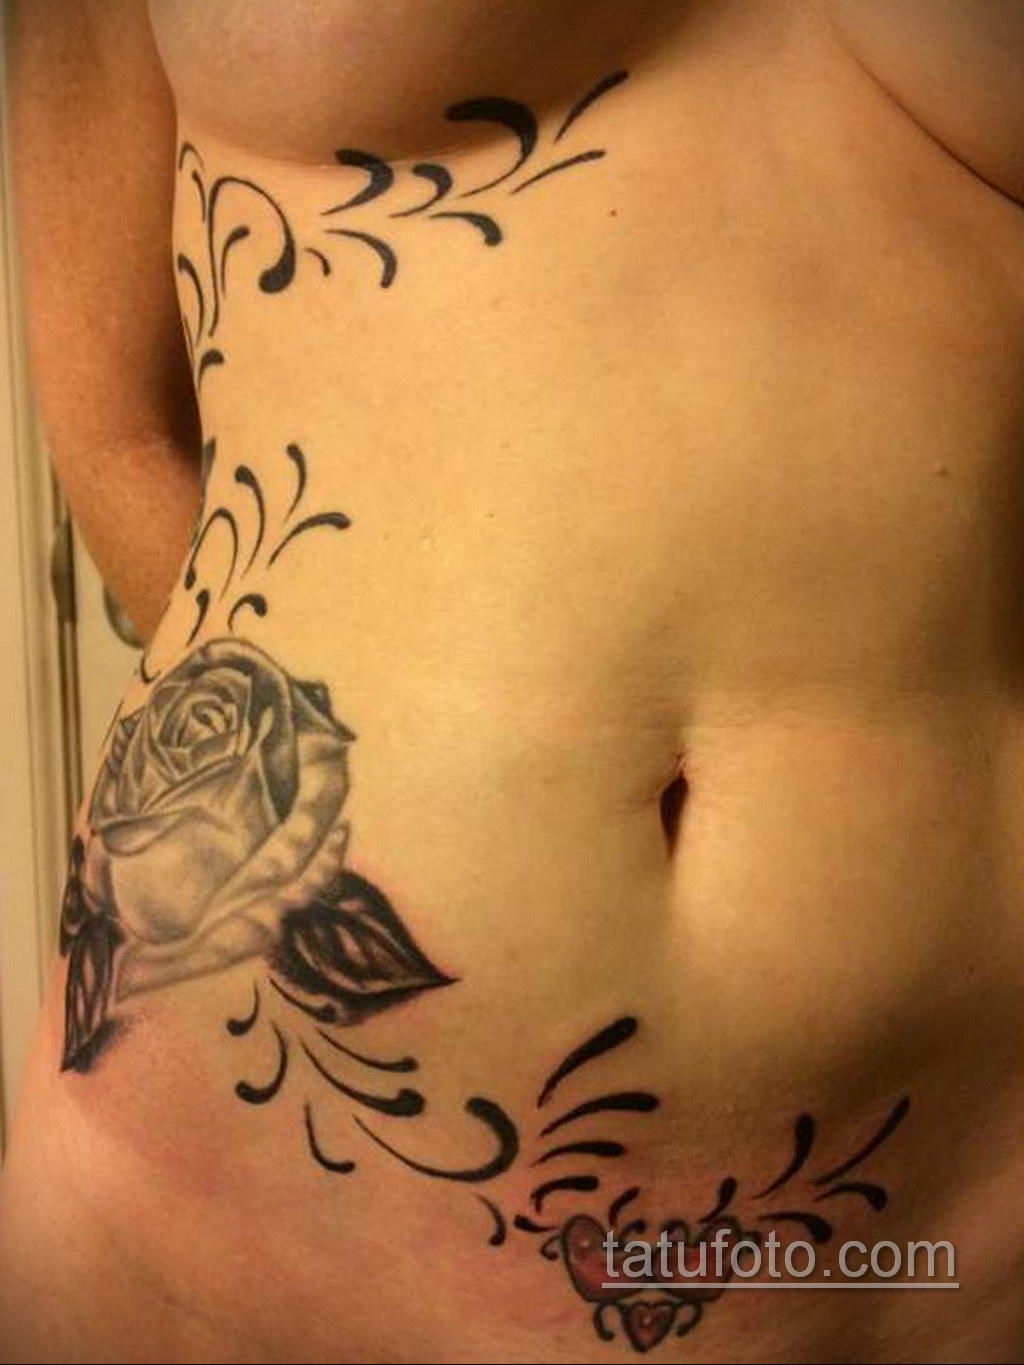 Фото женской интимной тату 16.11.2020 № 040 -female intimate tattoo- tatufo...